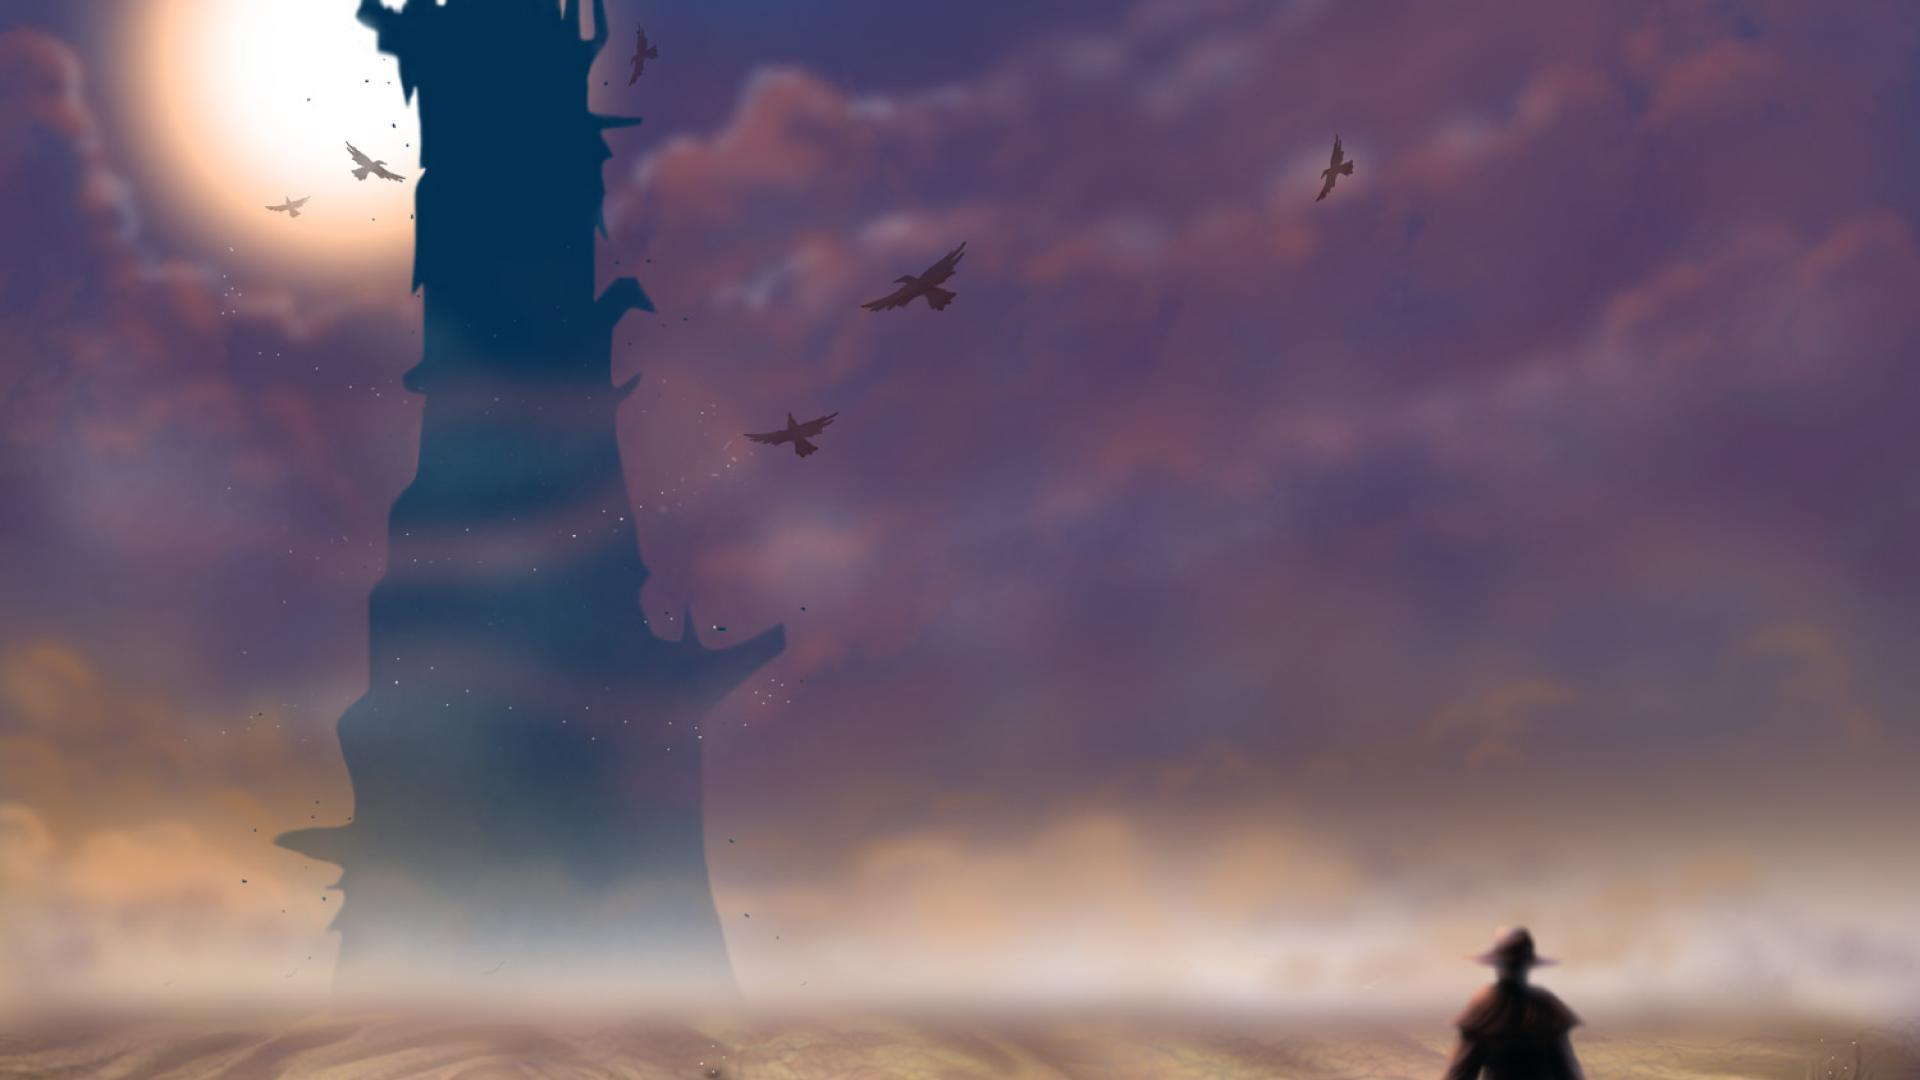 The Dark Tower - Sunless Skies Clockwork Sun , HD Wallpaper & Backgrounds